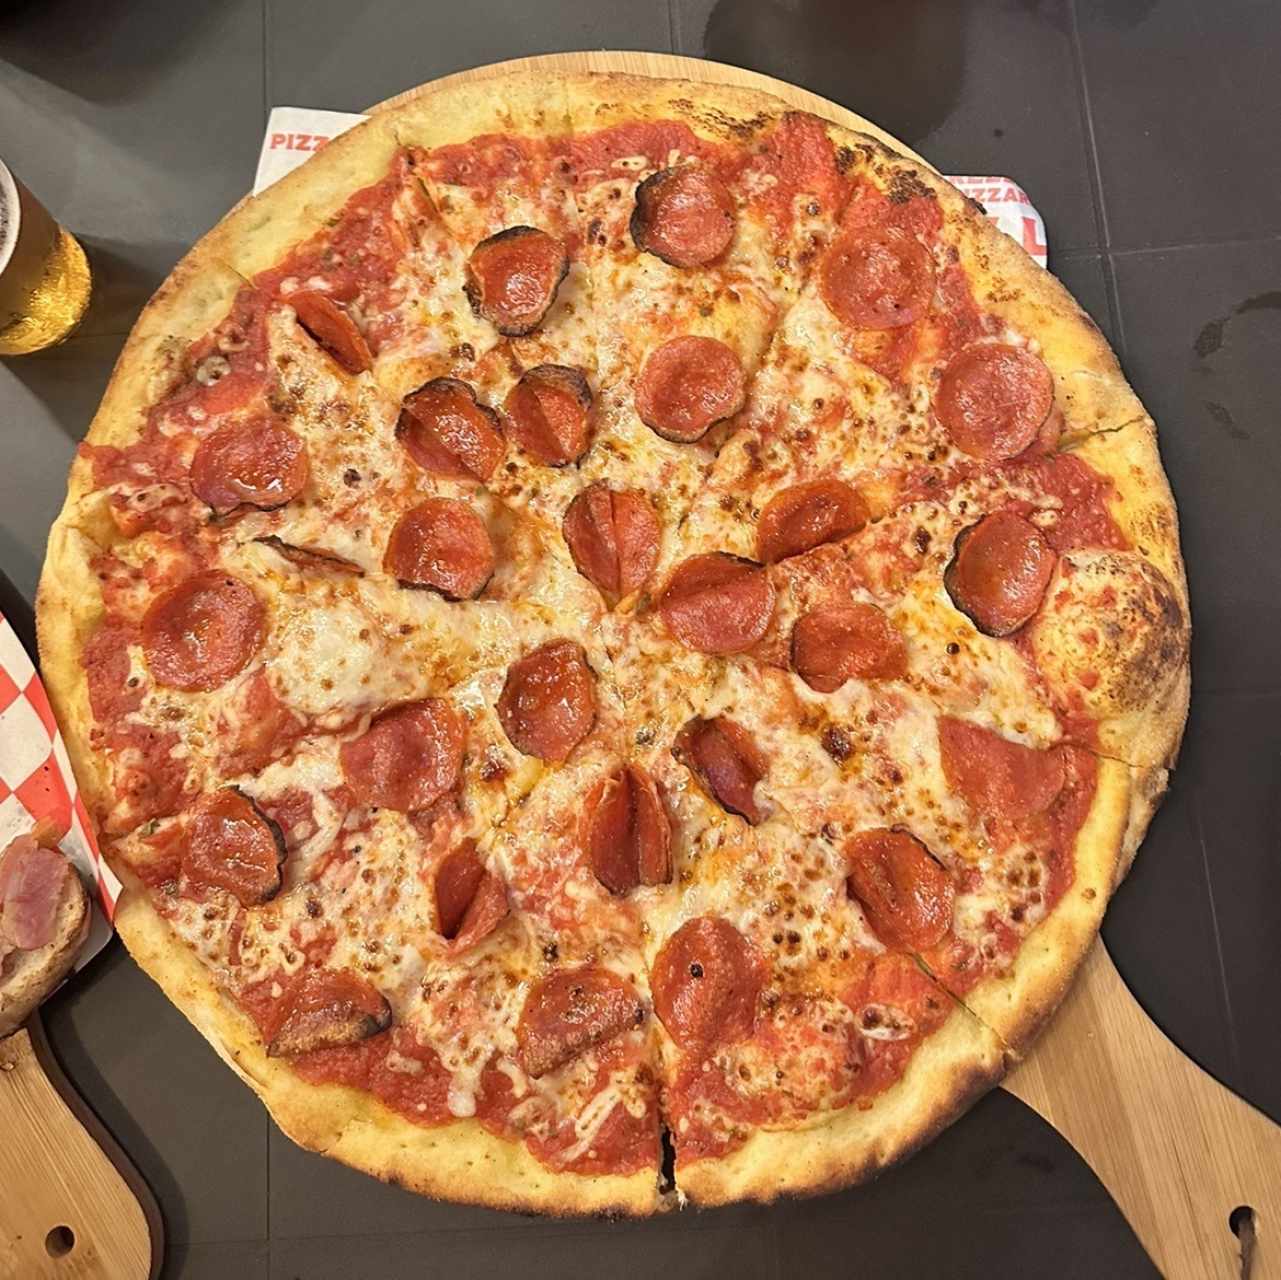 Pizza familiar de pepperonni, la favorita de mi hija.  Excelente tamaño vs precio y lo mejor es que estaba deliciosa.